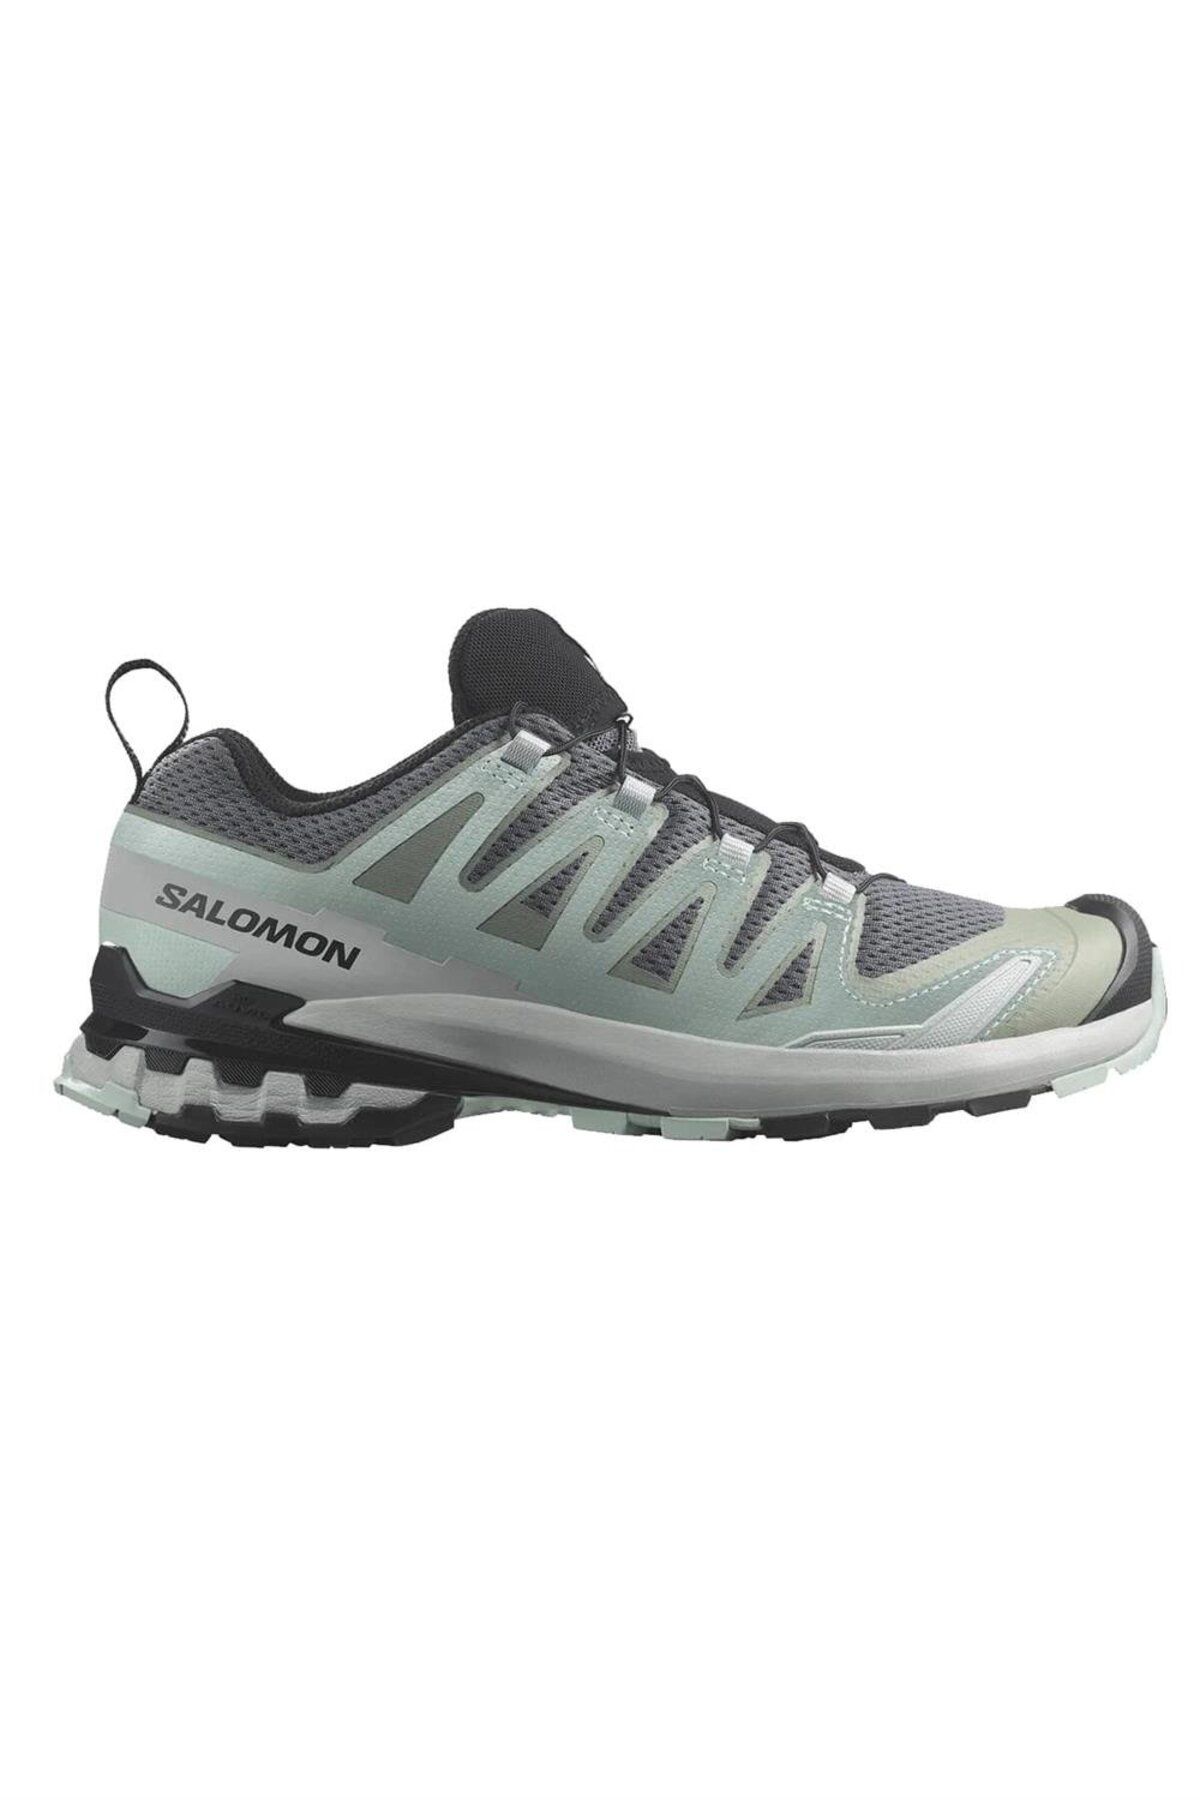 Salomon Xa Pro 3D V9 W Kadın Patika Koşu Ayakkabısı L47272900